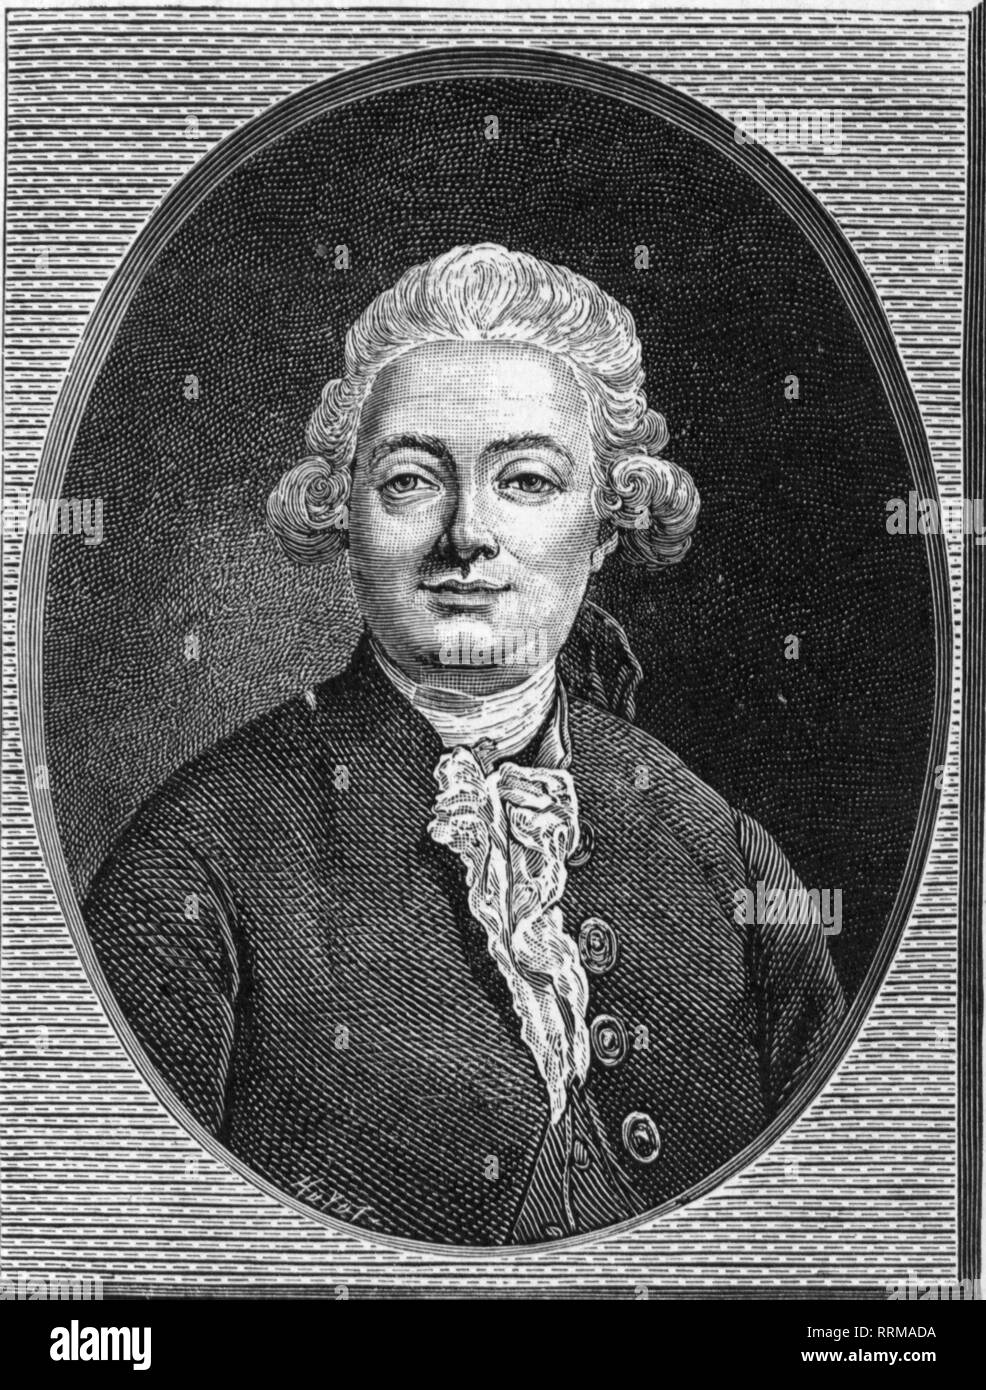 La Harpe, Jean-Francois de, 20.11.1739 - 11.2.1803, il critico francese e autore / scrittore, ritratto, incisione su rame, XVIII secolo, Additional-Rights-Clearance-Info-Not-Available Foto Stock